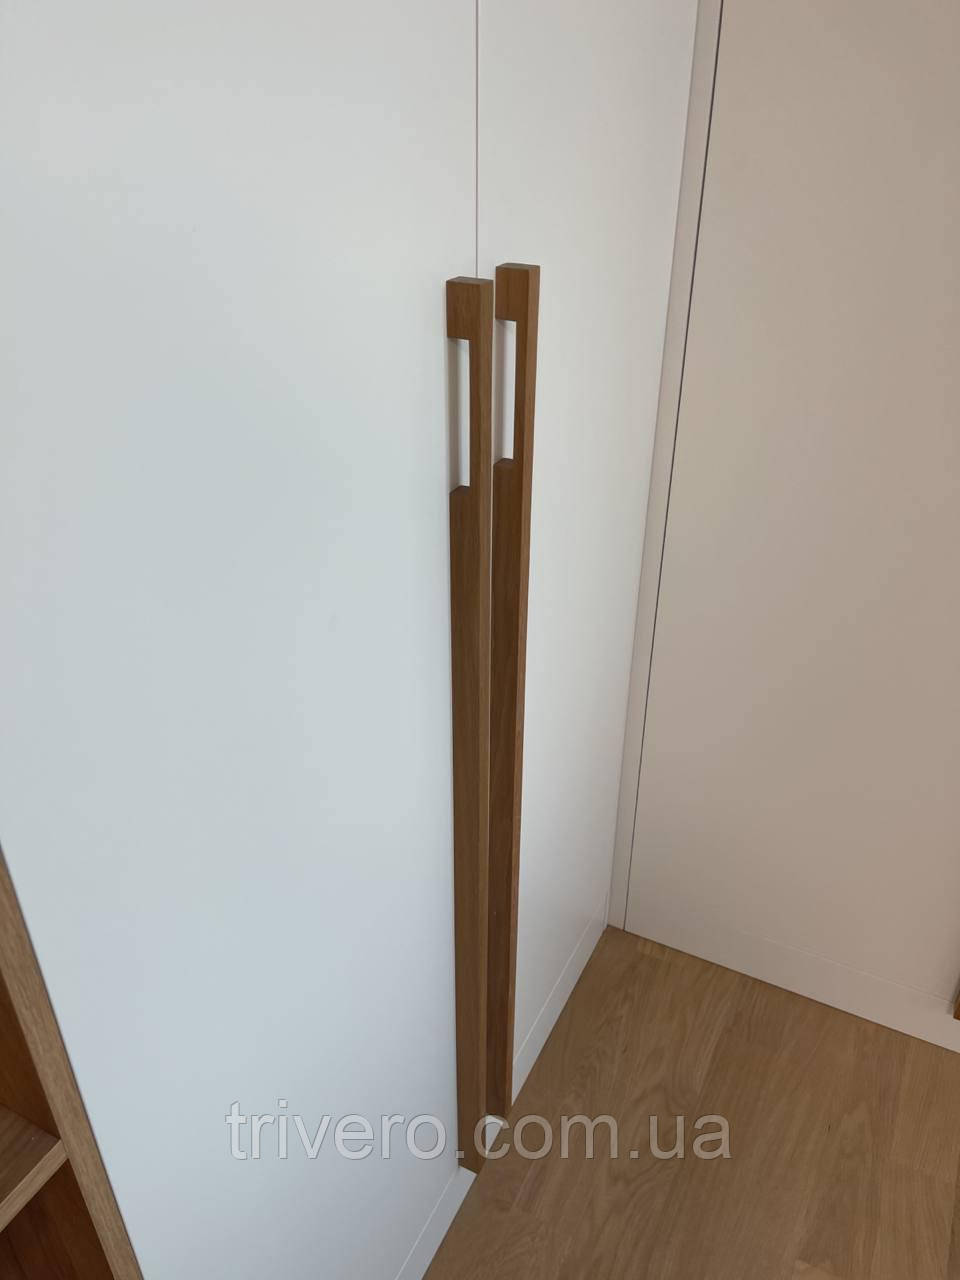 Длинные мебельные деревянные ручки планки ( Скоба ) ДУБ